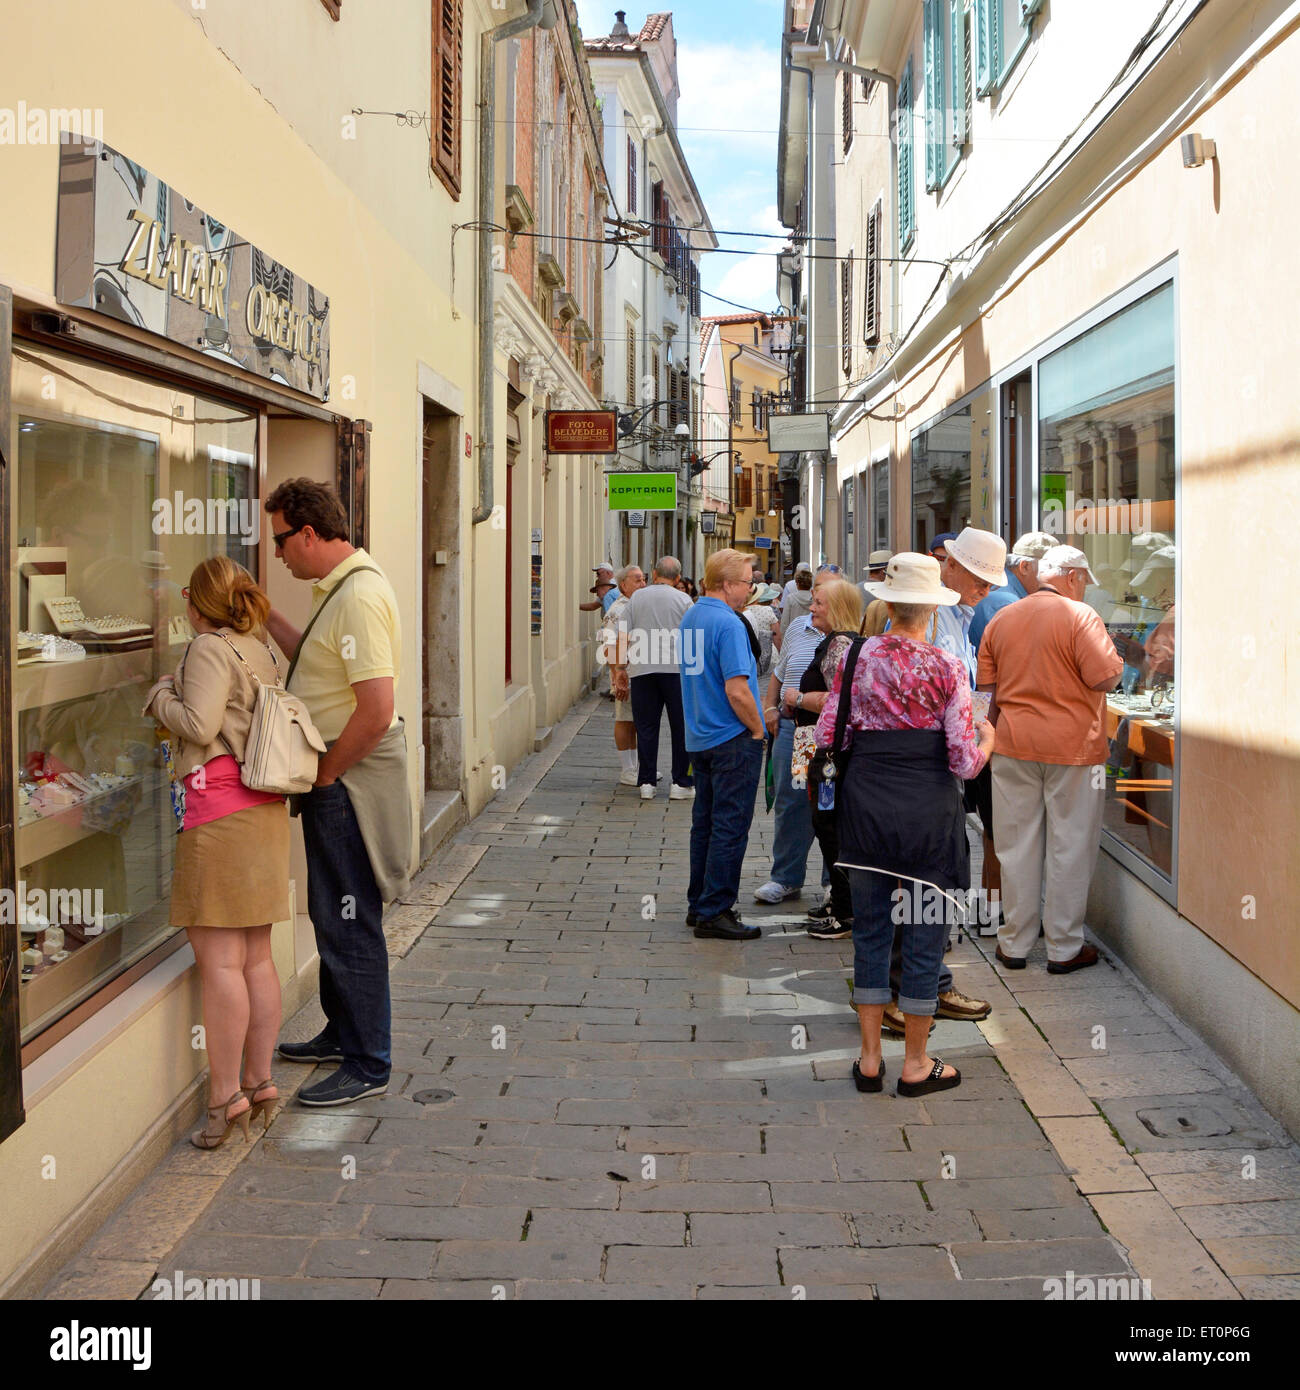 Koper Slovénie, l'Istrie de nombreux touristes d'un navire de croisière le window shopping dans l'une des vieilles ruelles étroites Kopers' Banque D'Images